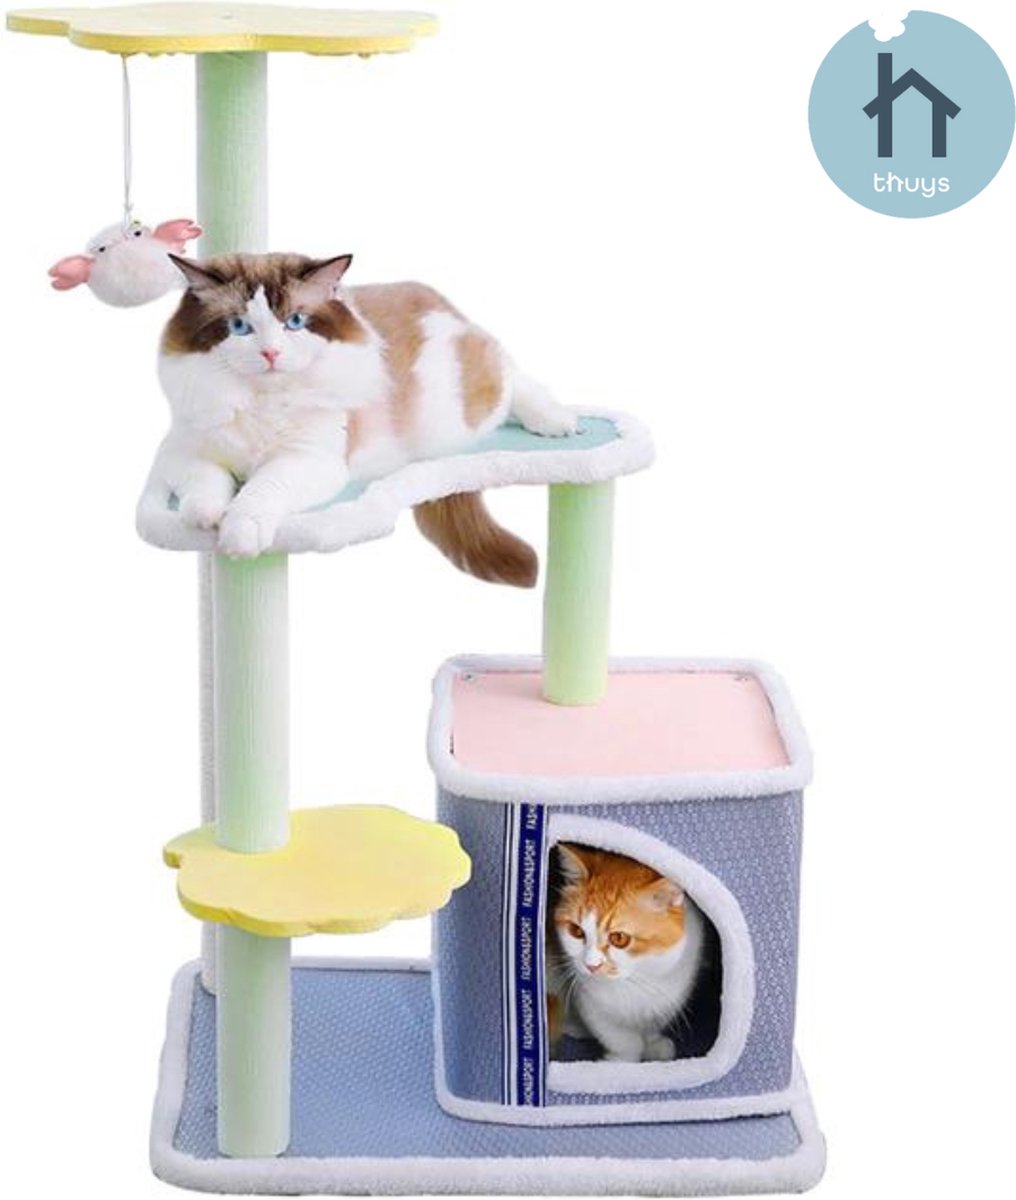 Krabpaal voor Katten - Met Interactieve Balletjes & Gratis kattenspeeltje - Krabmeubel - Kattenboom - Kattenklimrek - Multikleur